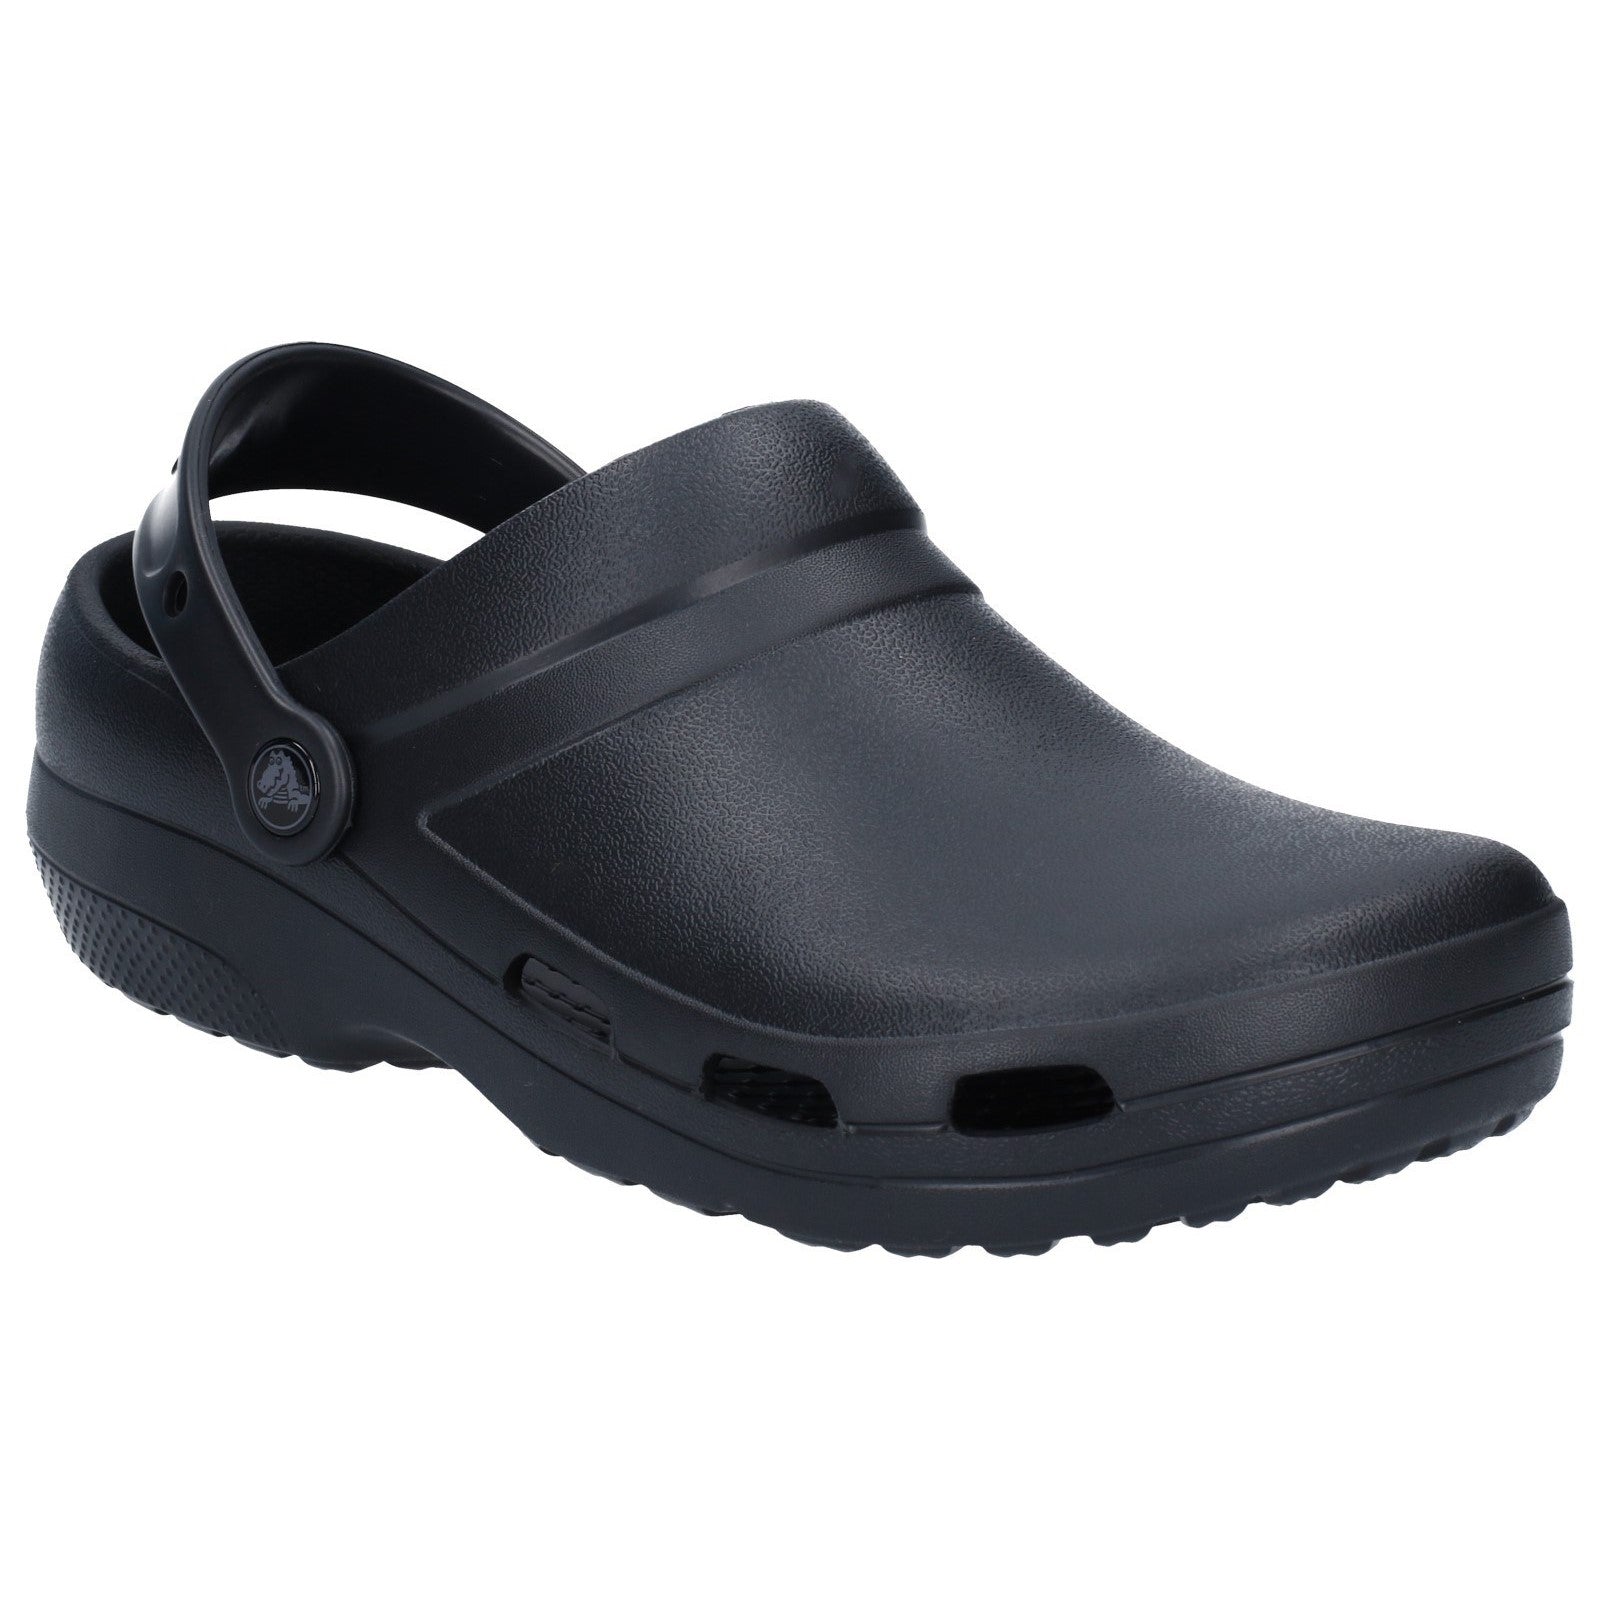 Crocs Specialist ll Vent Clog Shoes